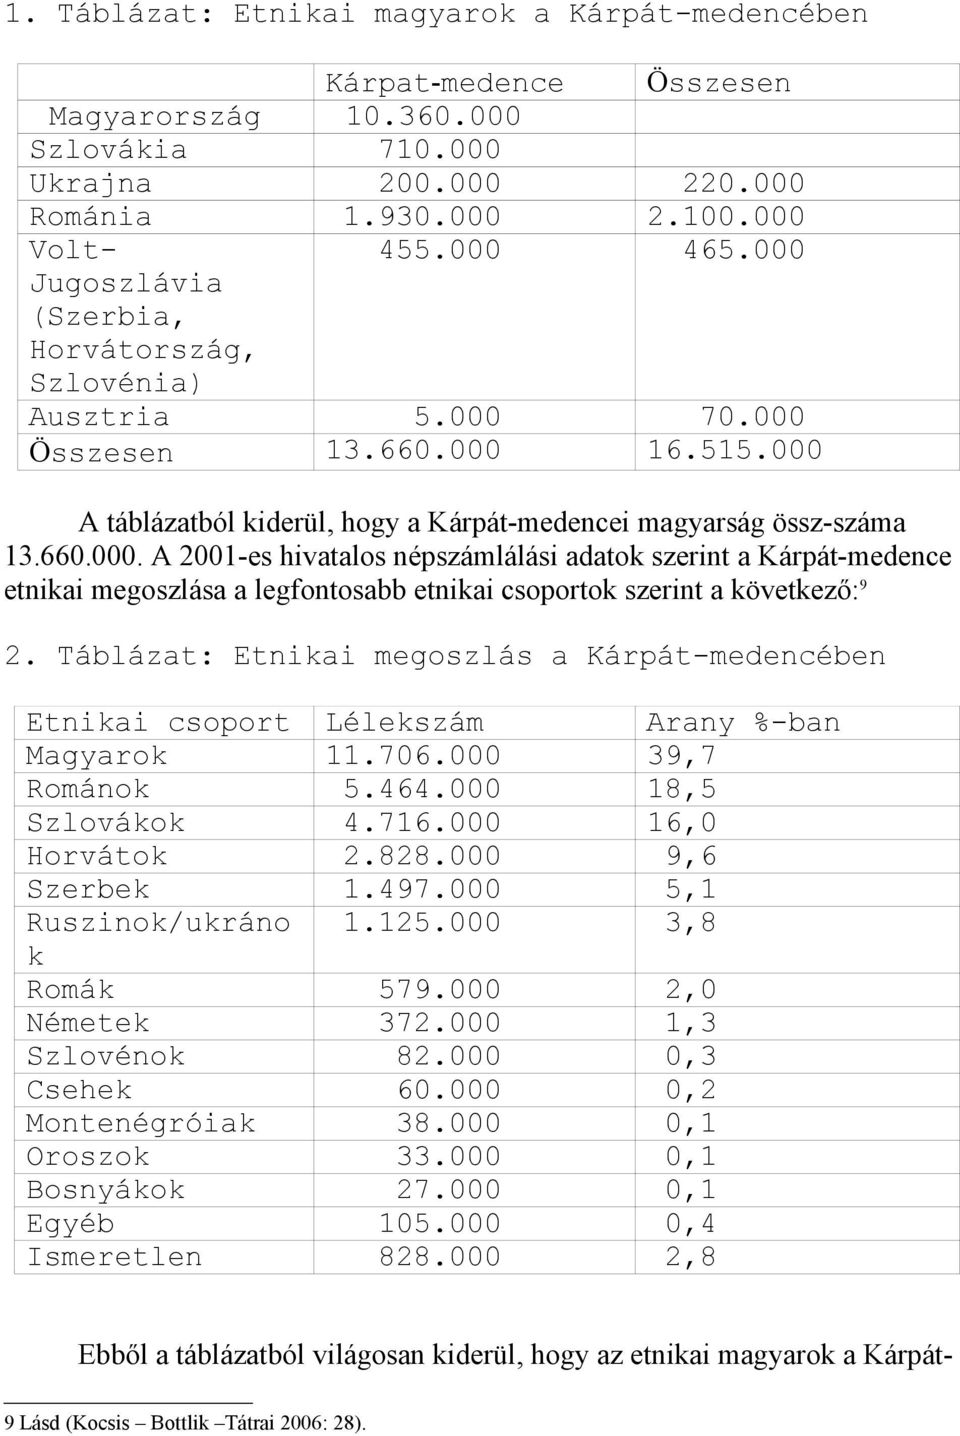 Táblázat: Etnikai megoszlás a Kárpát-medencében Etnikai csoport Lélekszám Arany %-ban Magyarok 11.706.000 39,7 Románok 5.464.000 18,5 Szlovákok 4.716.000 16,0 Horvátok 2.828.000 9,6 Szerbek 1.497.